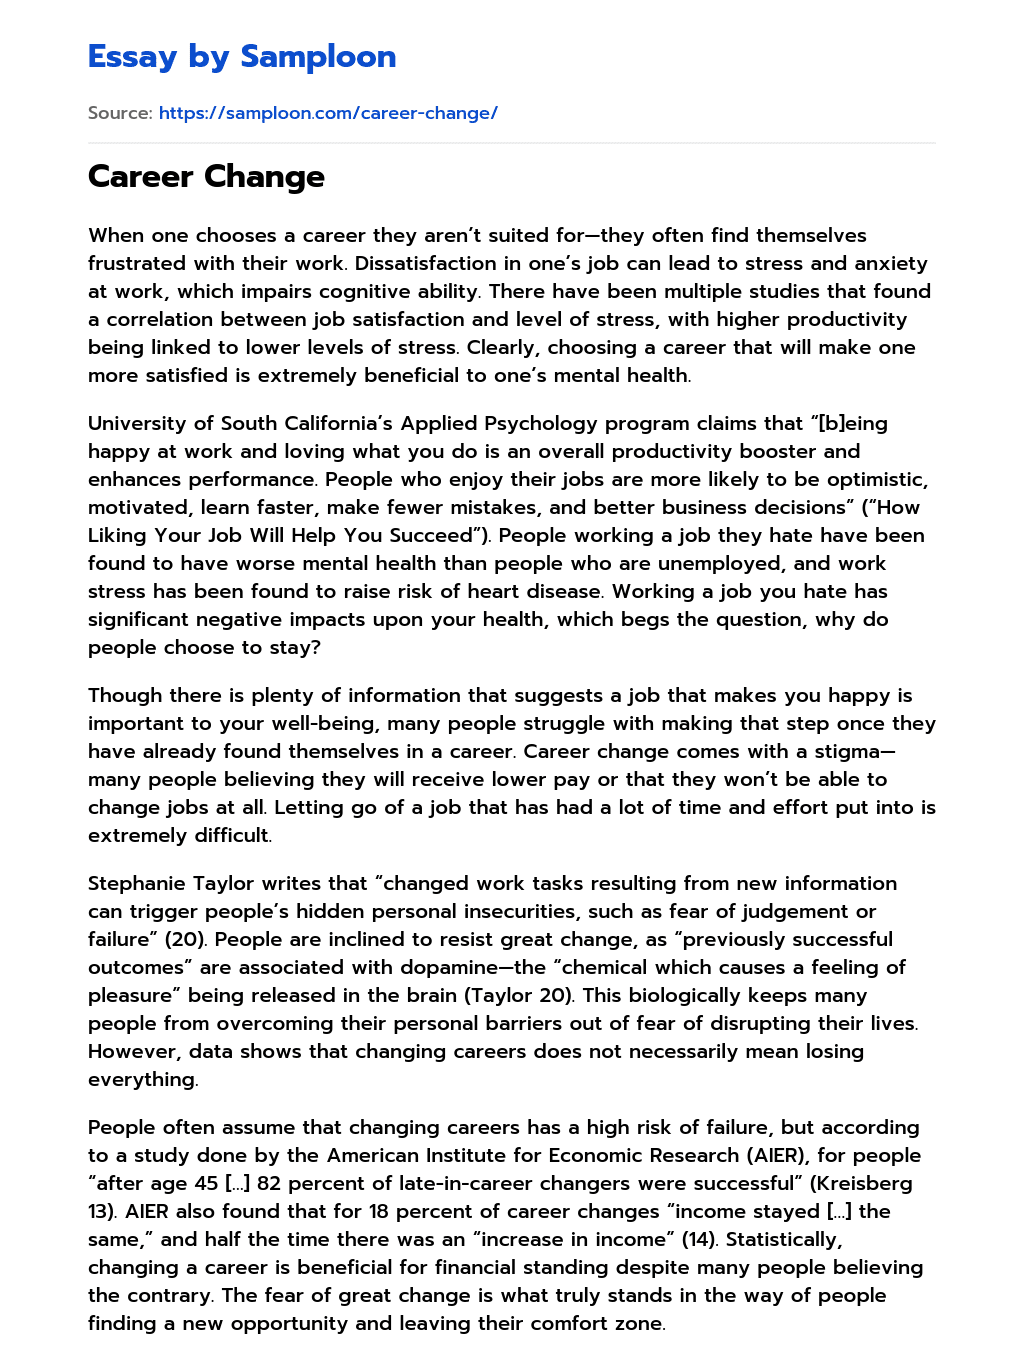 essays on career change